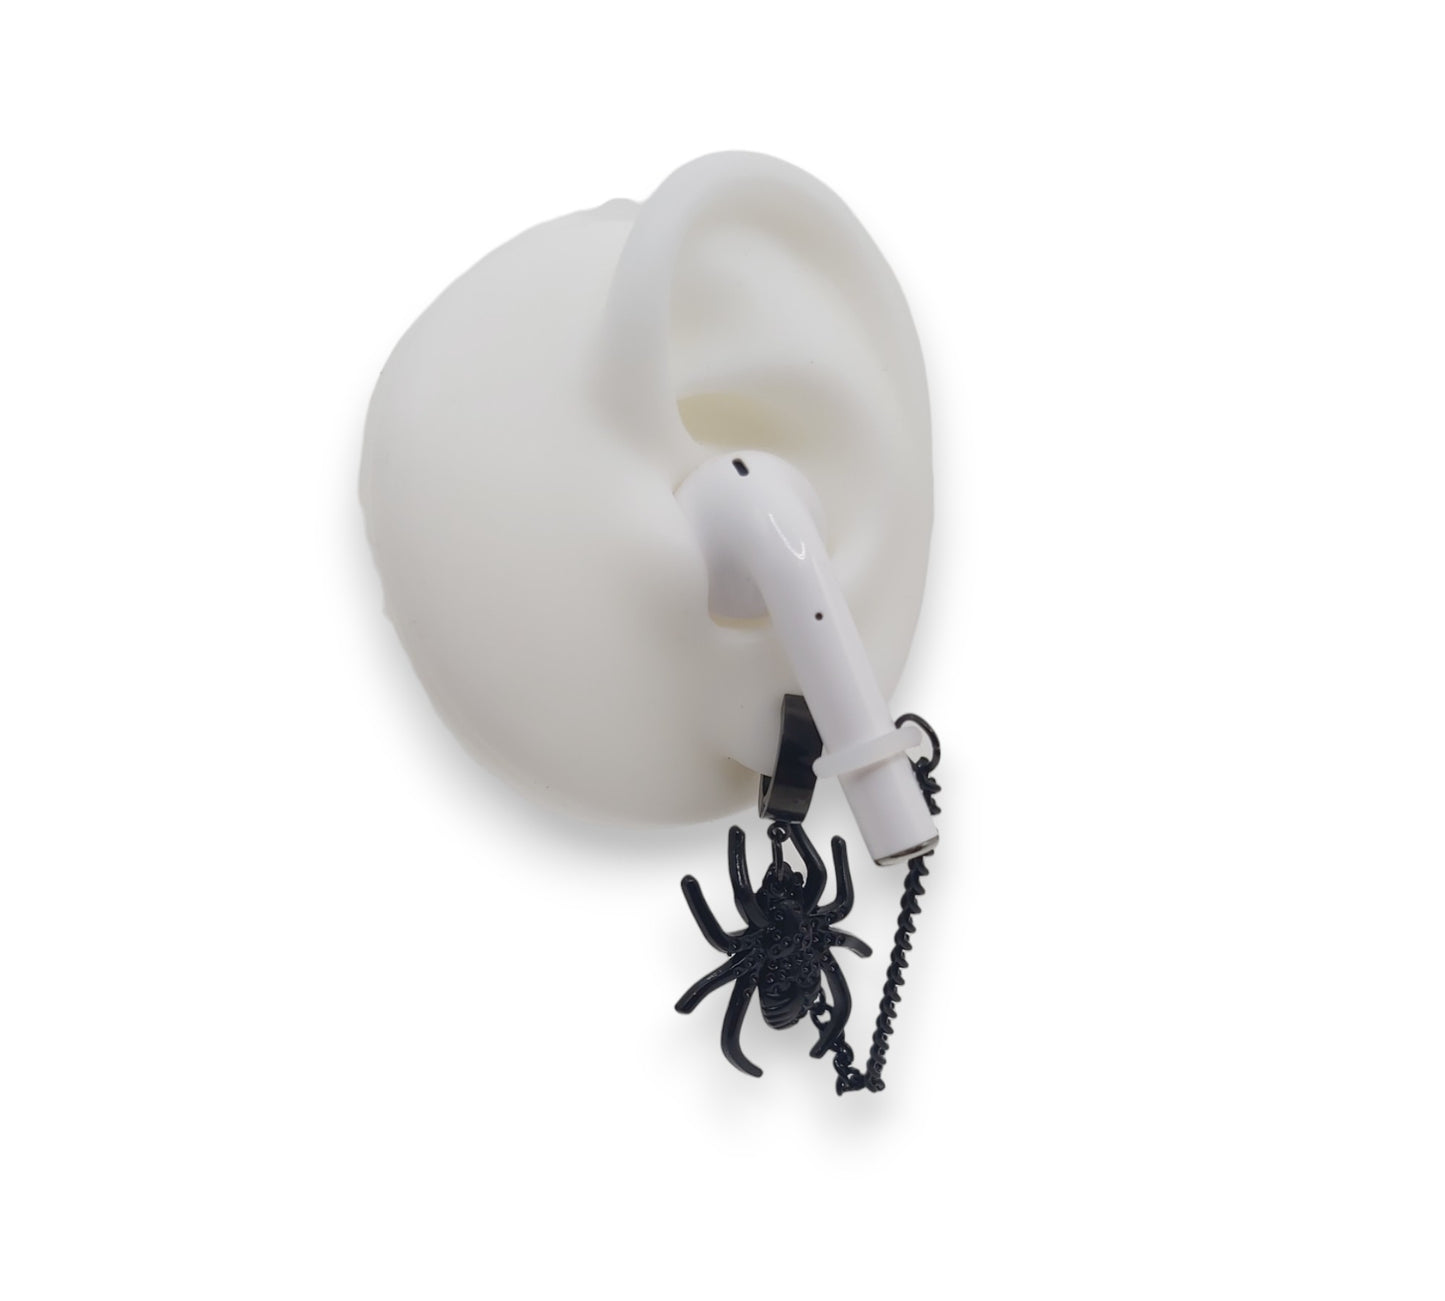 Boucles d'oreilles anti-perte Black Spider pour écouteurs/écouteurs sans fil